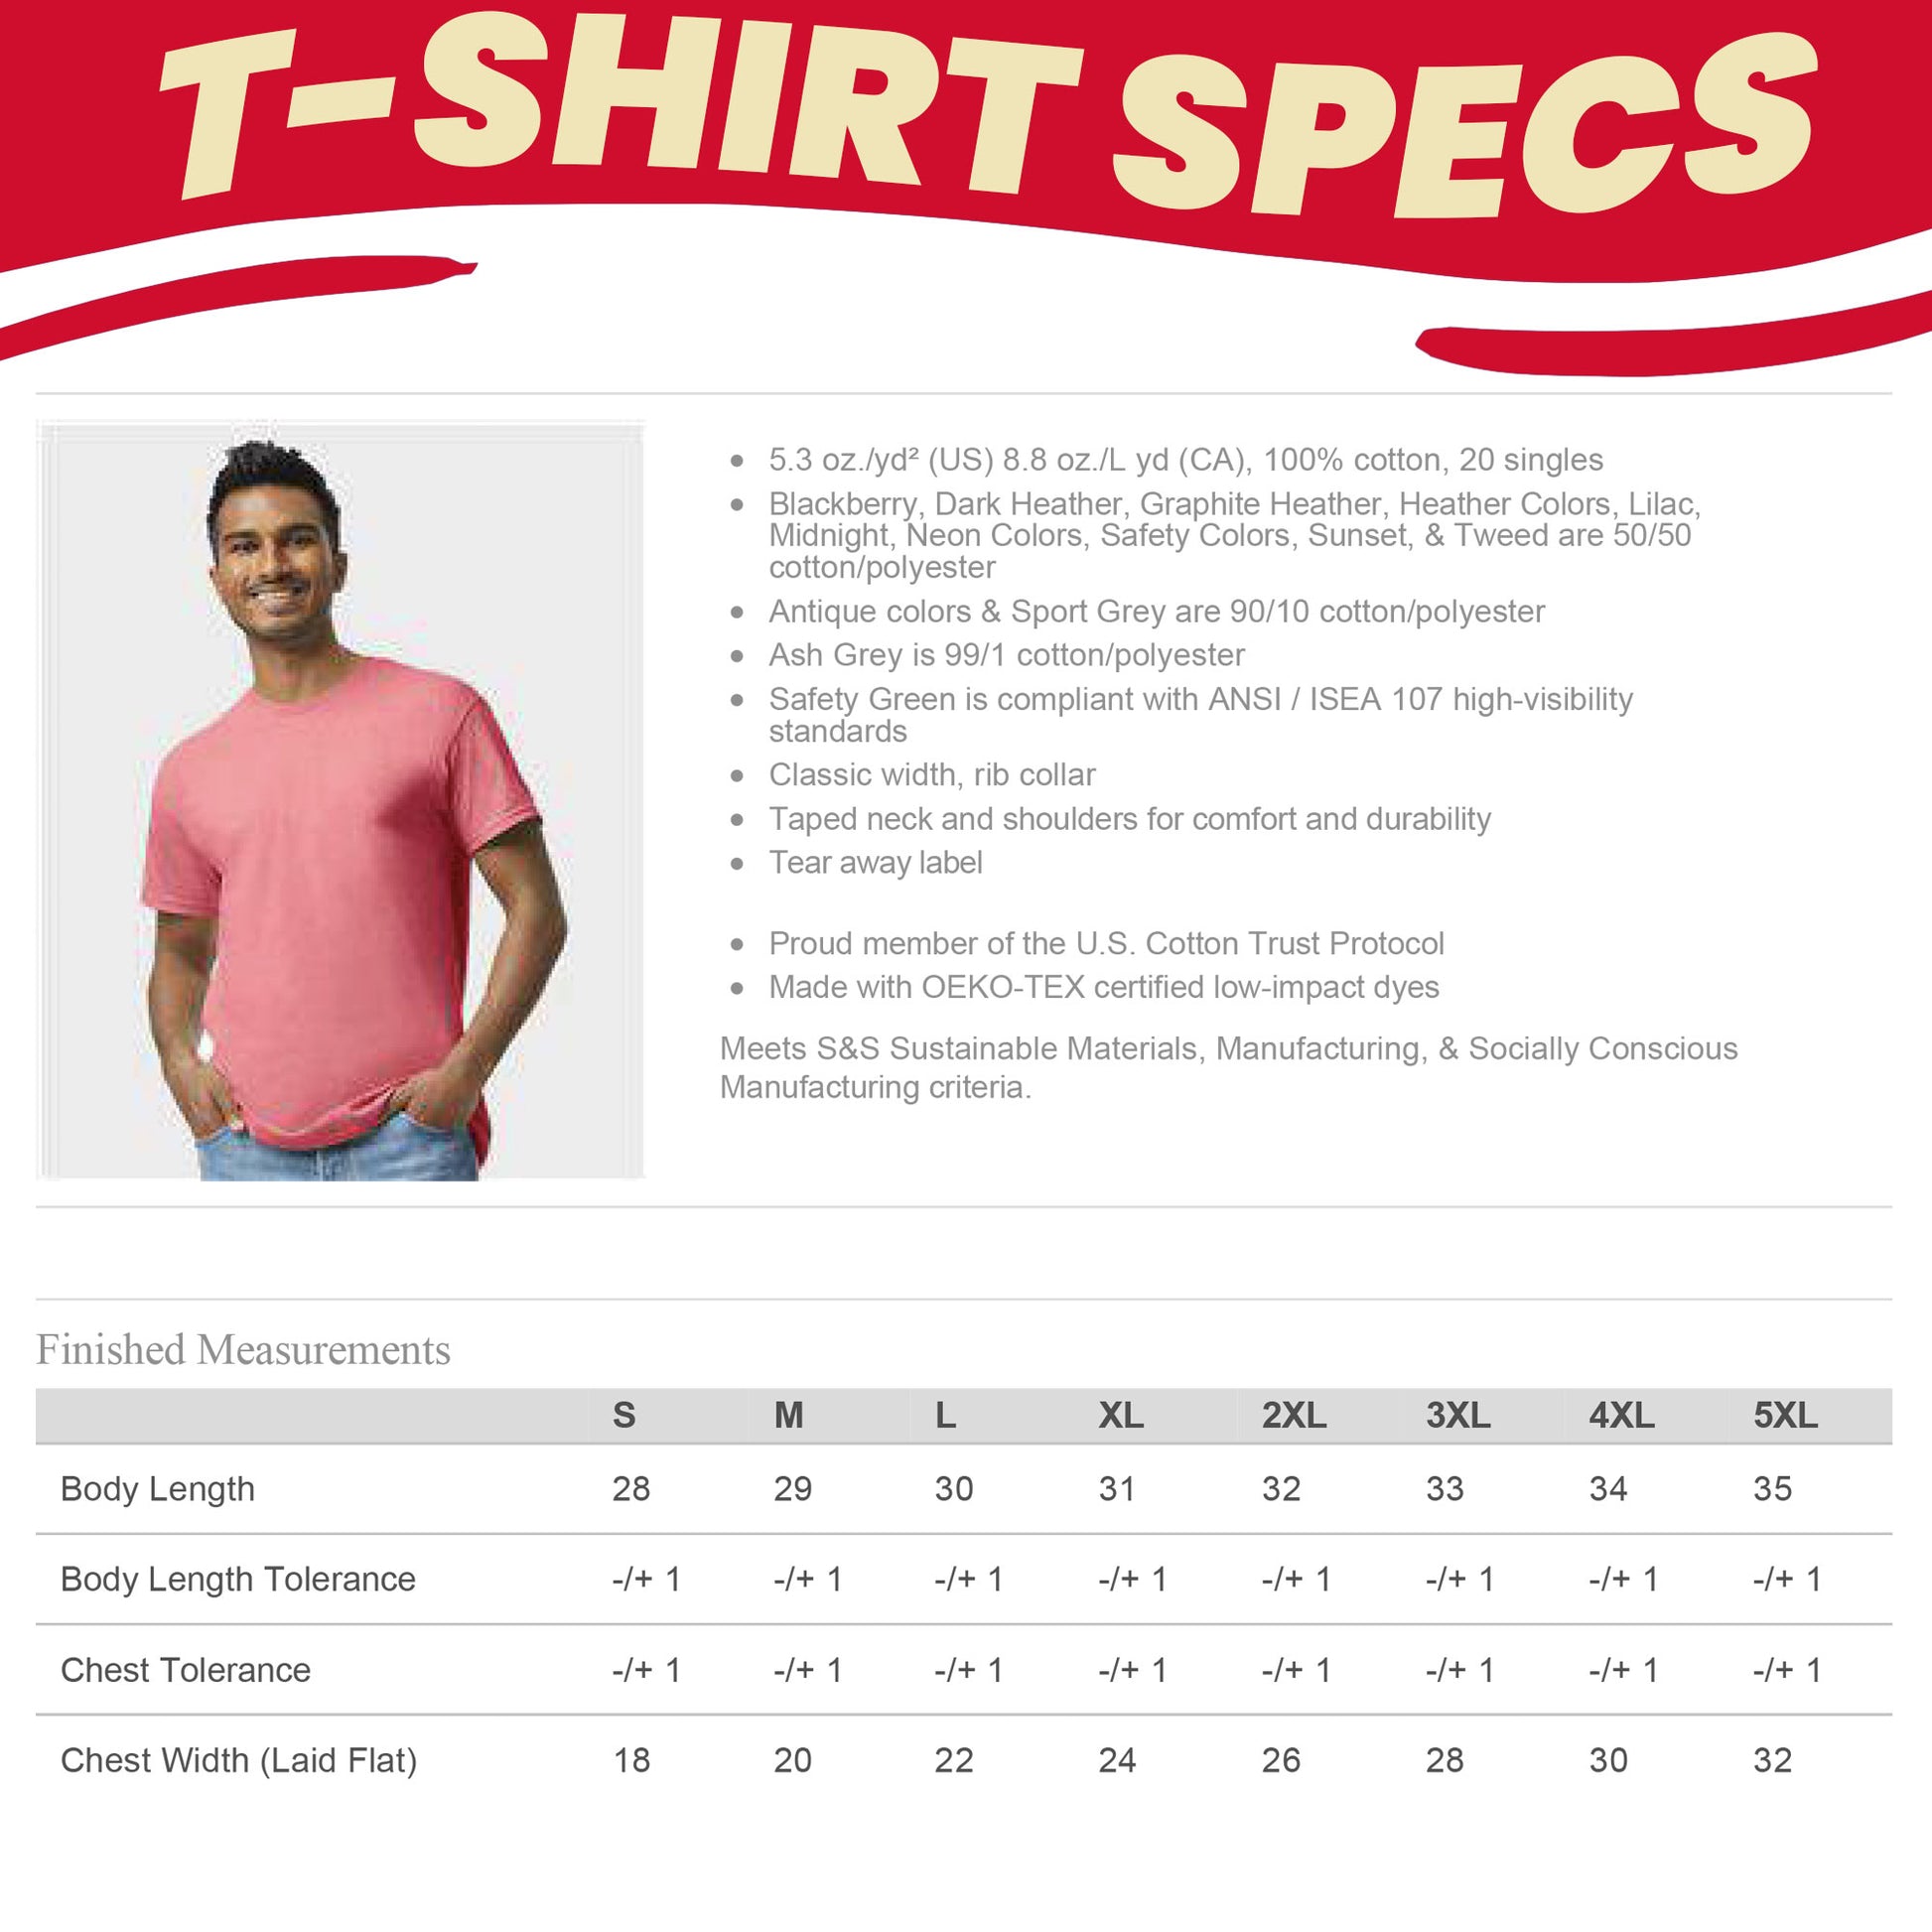 custom-t-shirts-bulk-screen-print-deisgn-fast-personalized